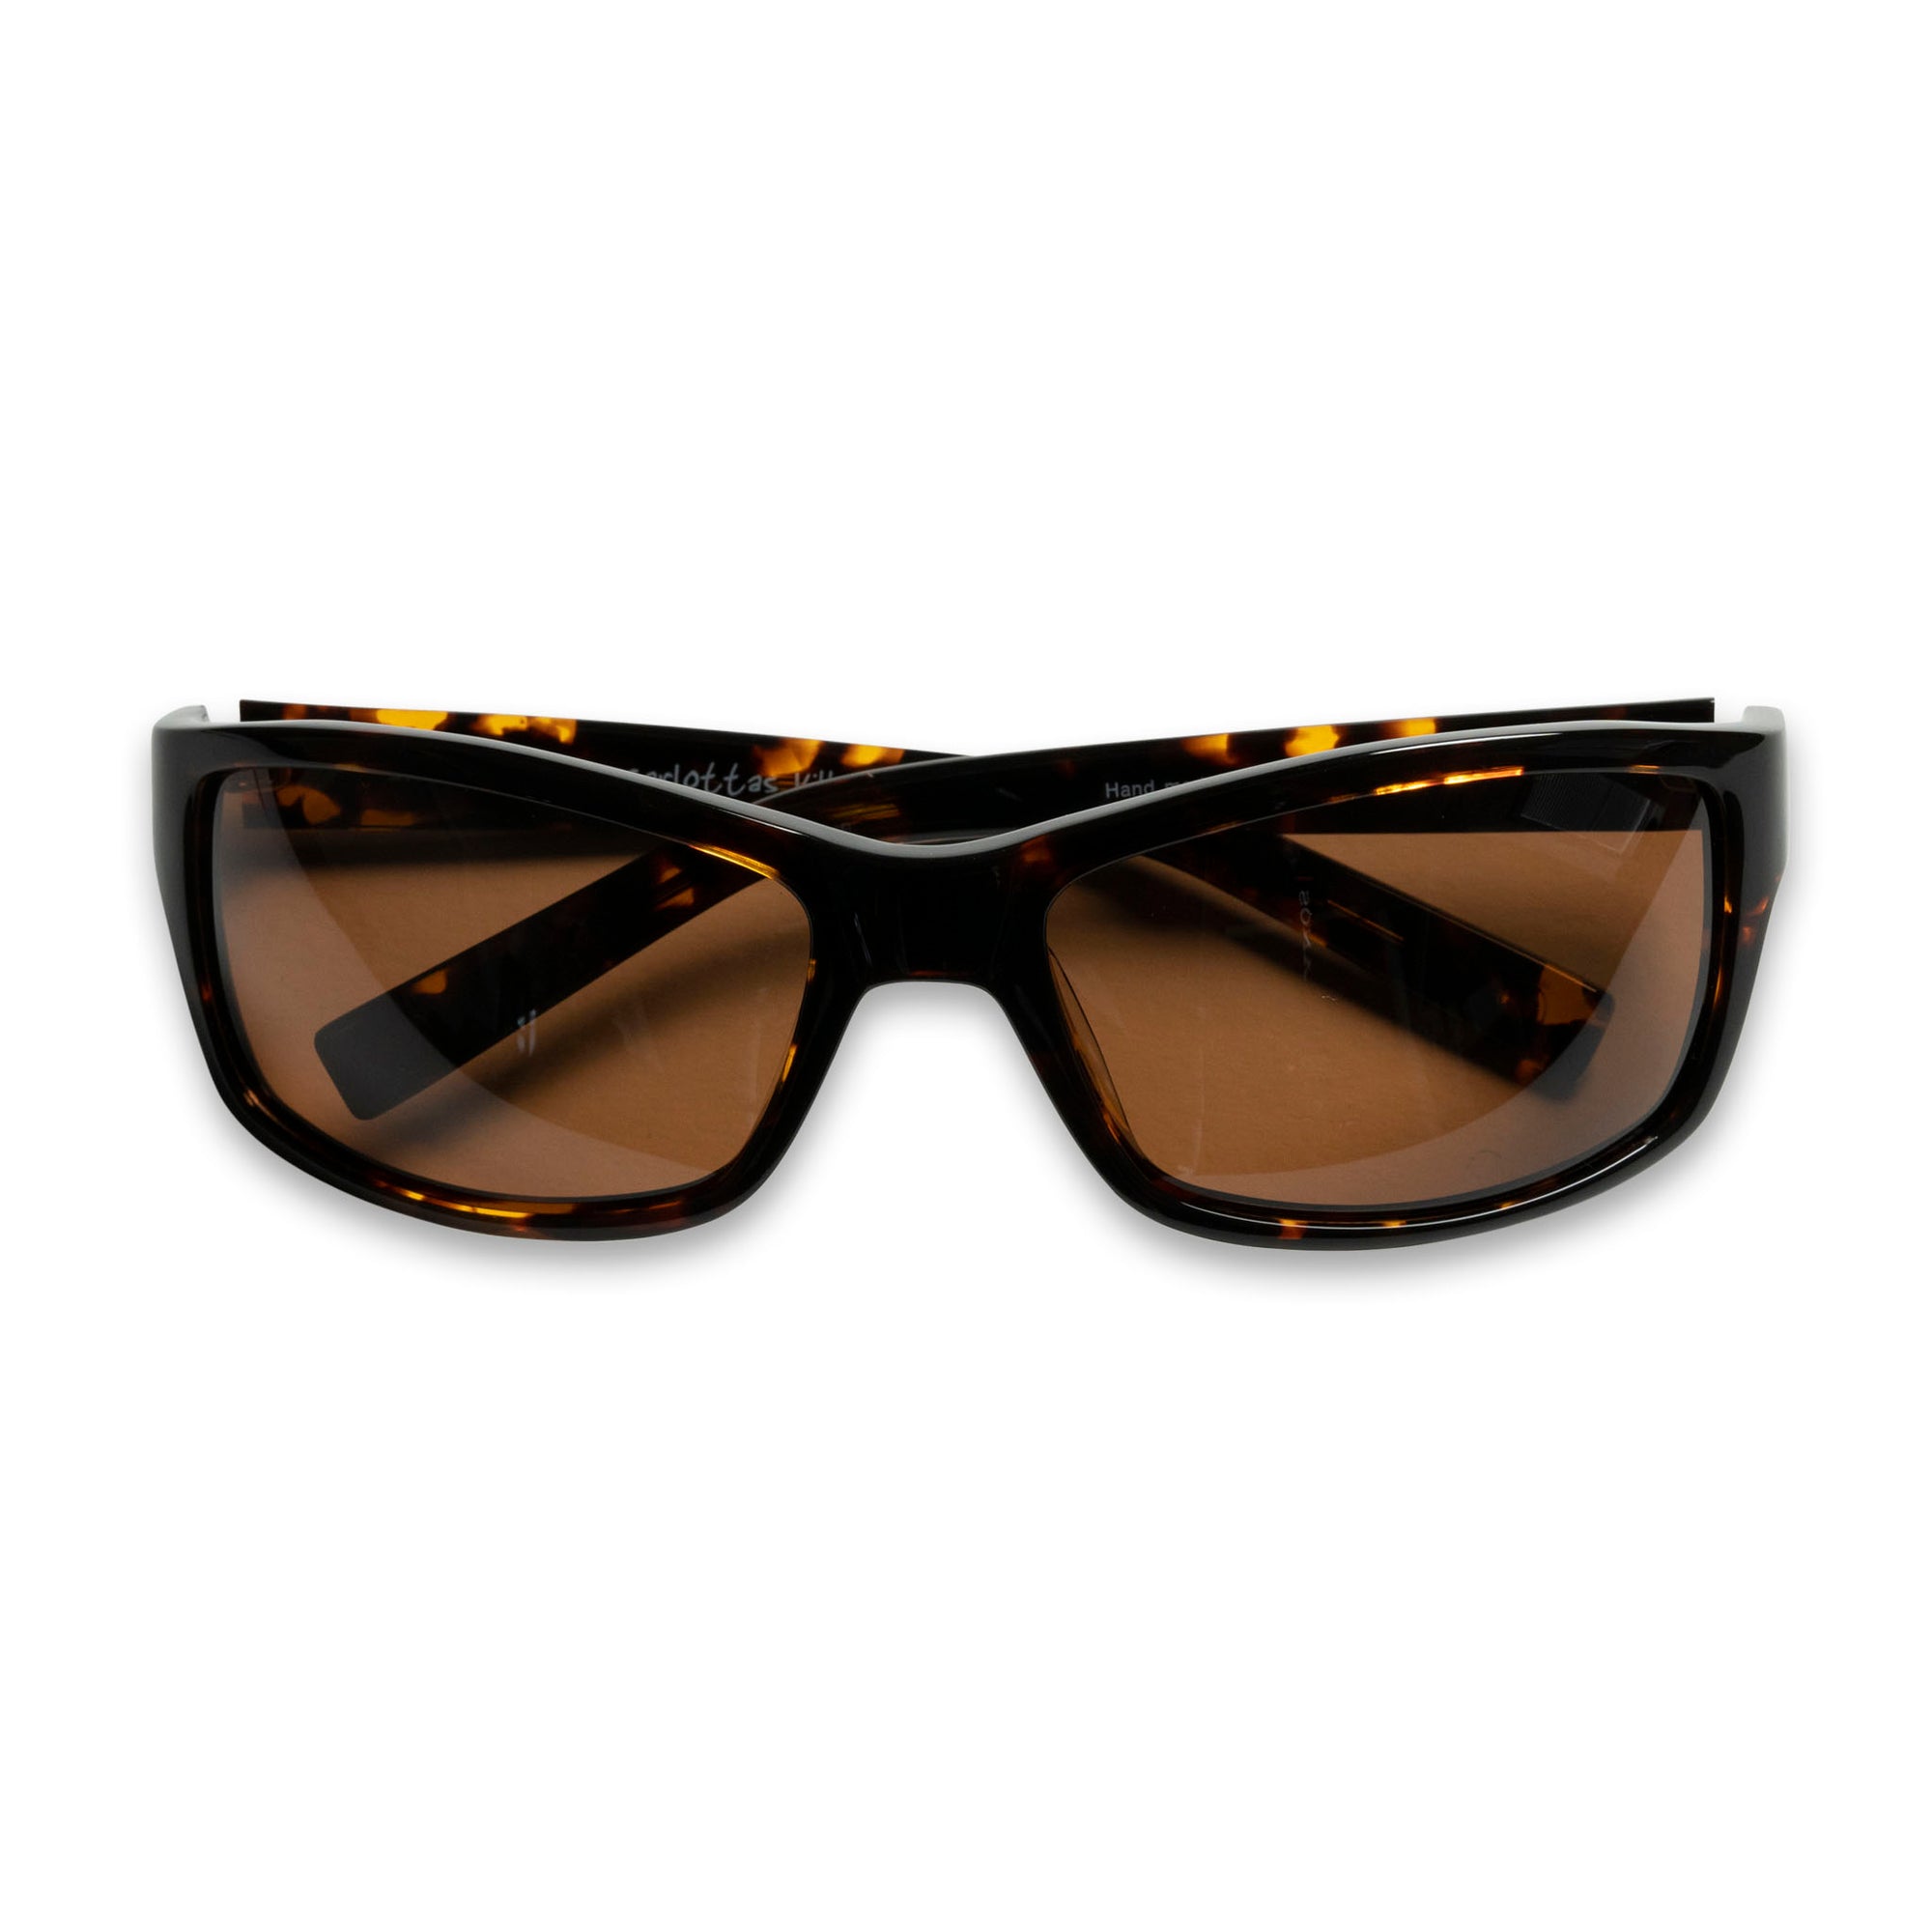 carlottas-village-ocean-acetate-sunglasses-black